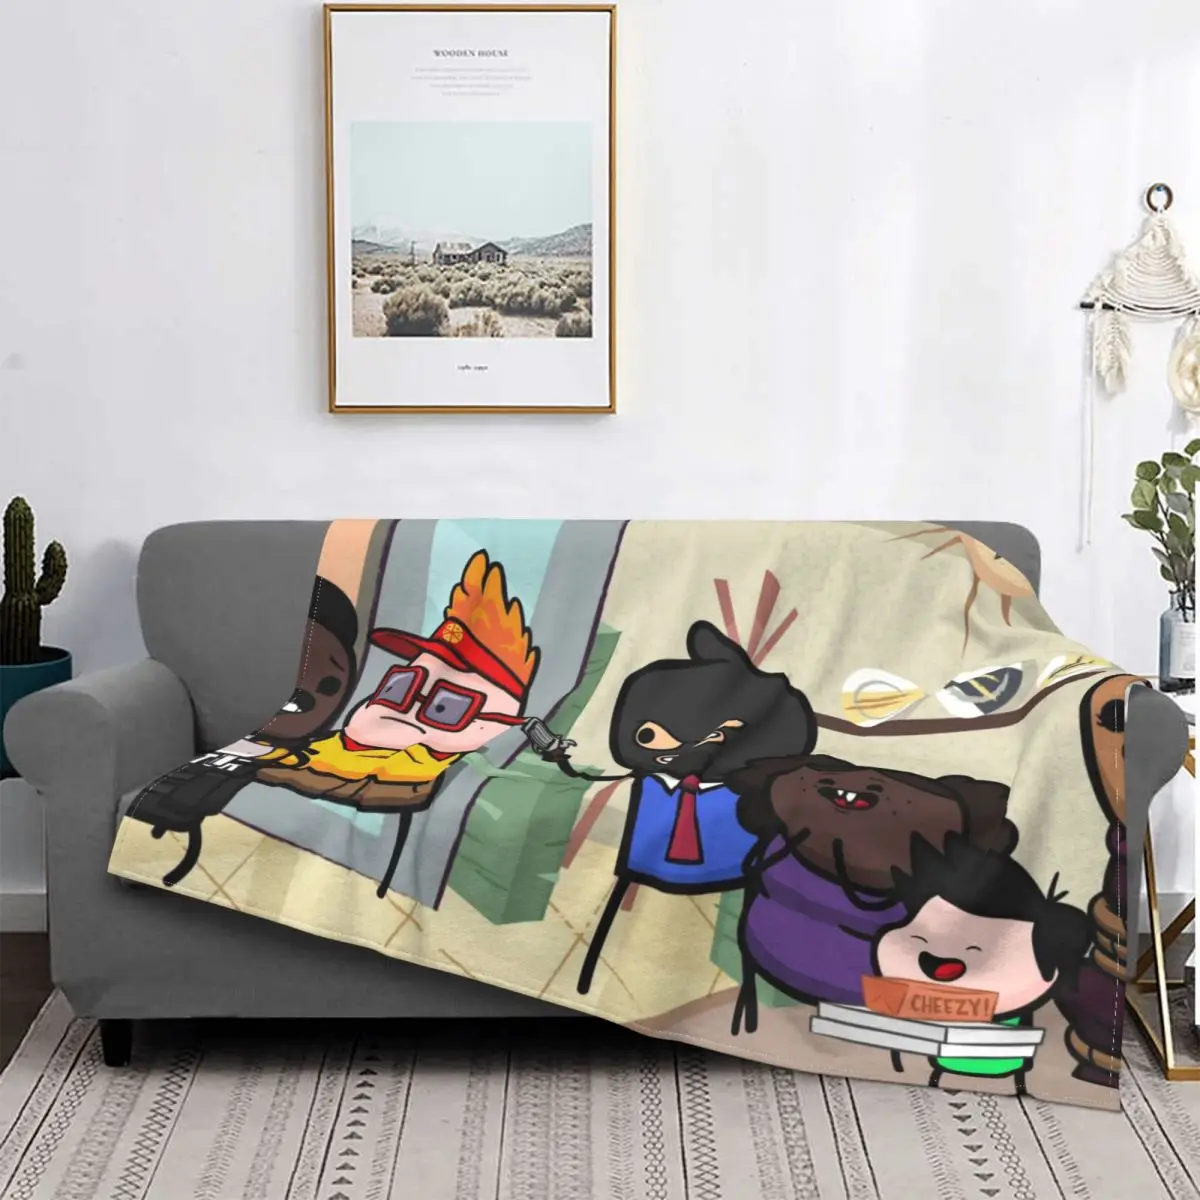 

Manta de franela de serie de TV divertida, para el hogar colcha, decoración Cheezy, portátil, muestra de cianuro y placer